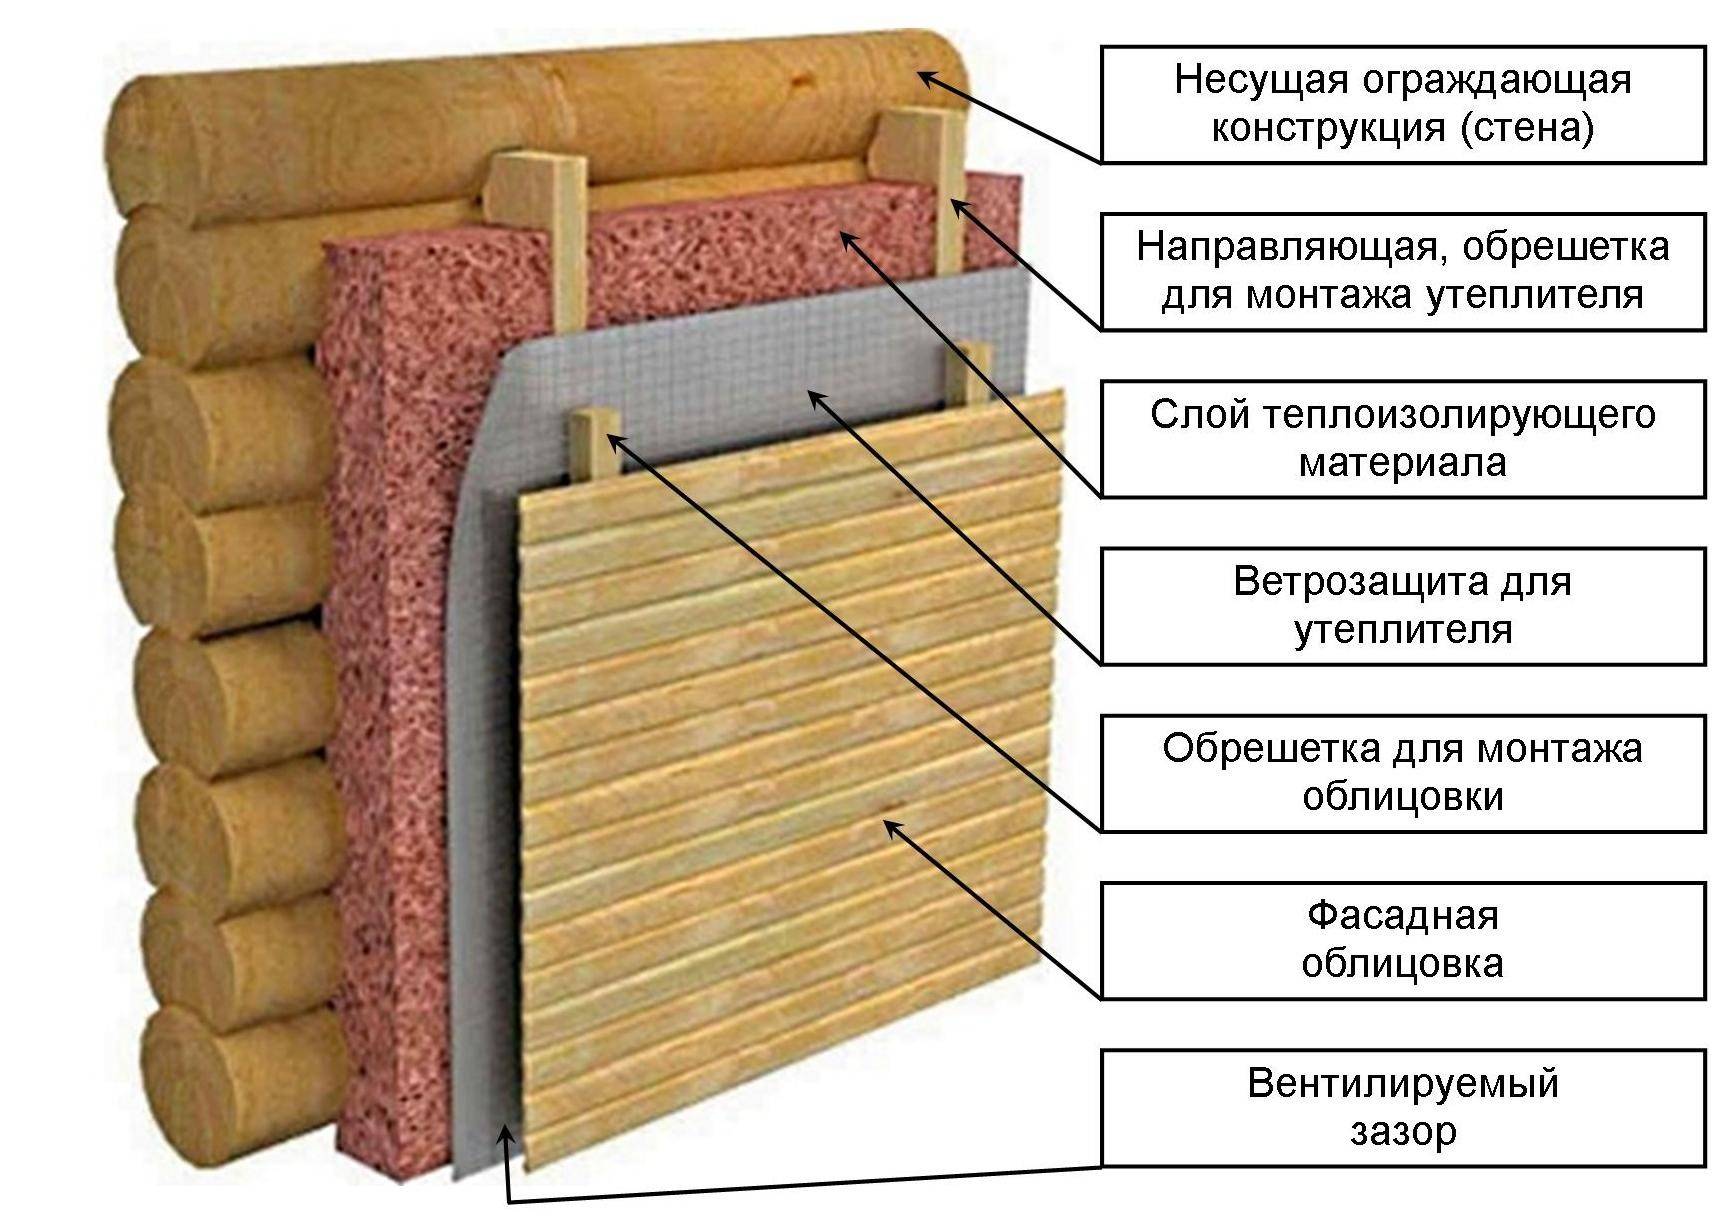 Как утеплить стену в угловой квартире изнутри - выбор материала и порядок монтажа